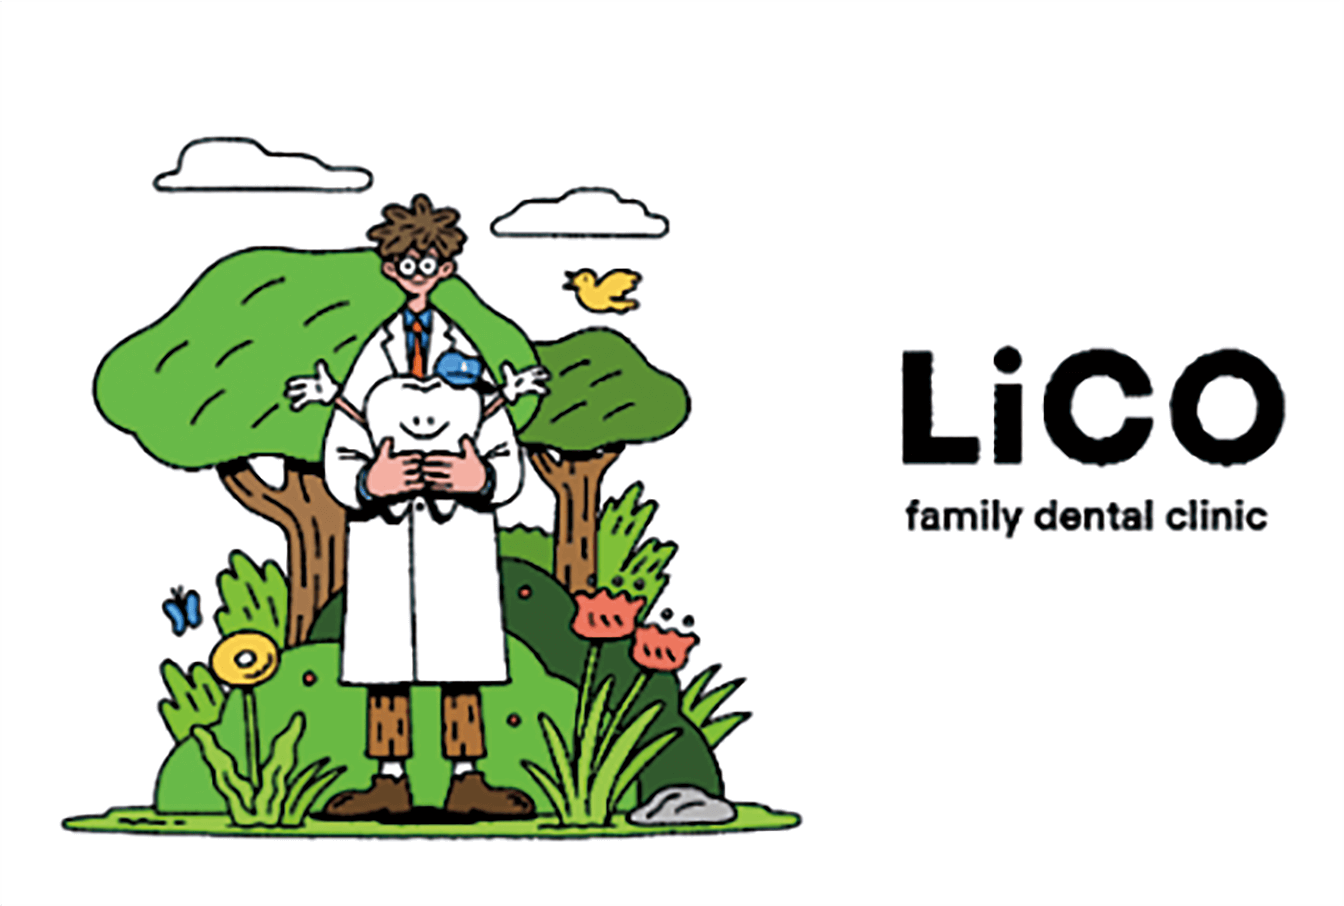 Lico family dental clinic